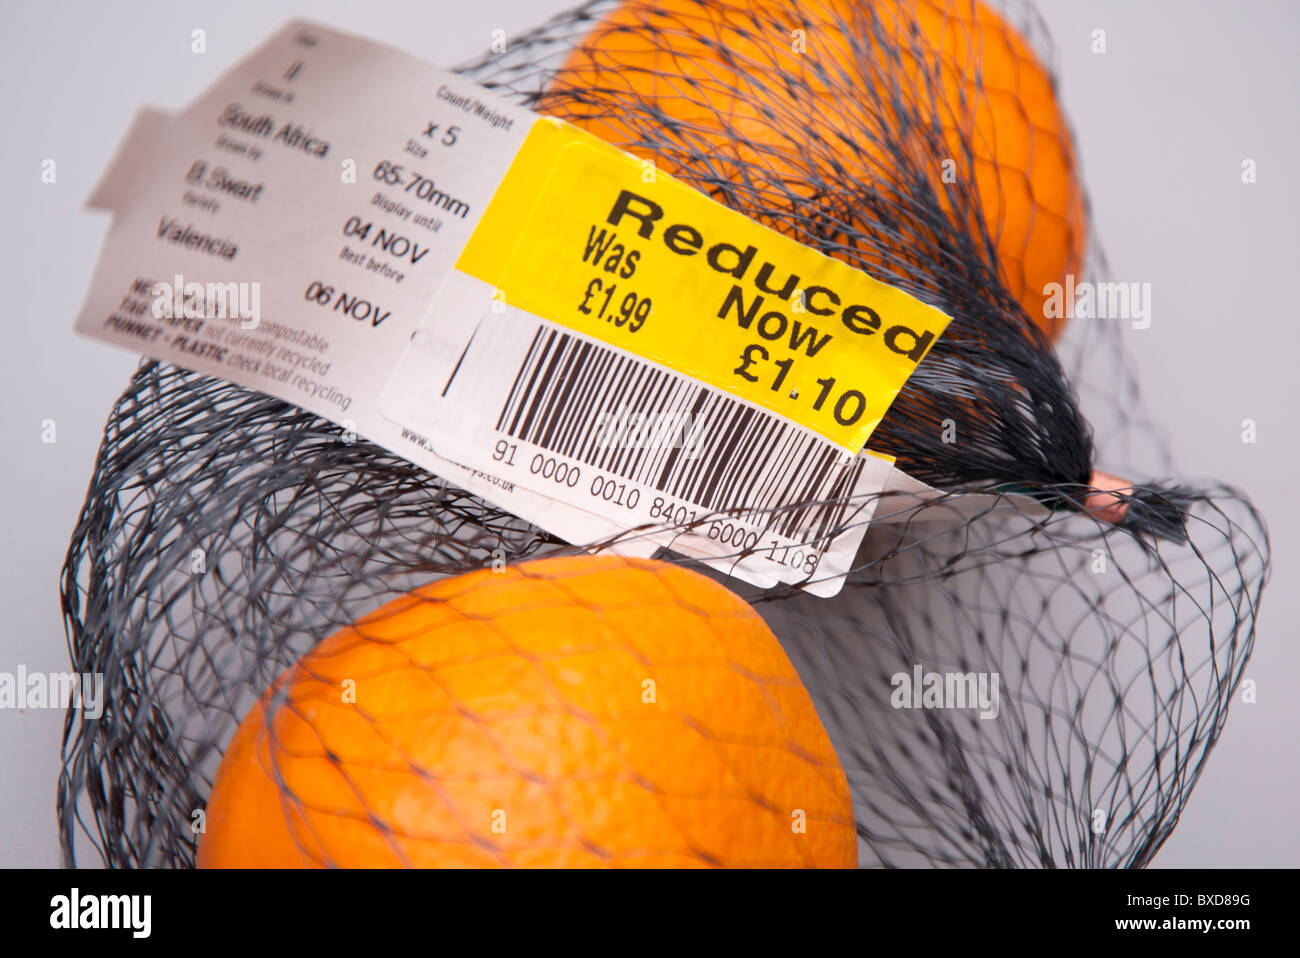 Las naranjas a precio reducido del supermercado Foto de stock